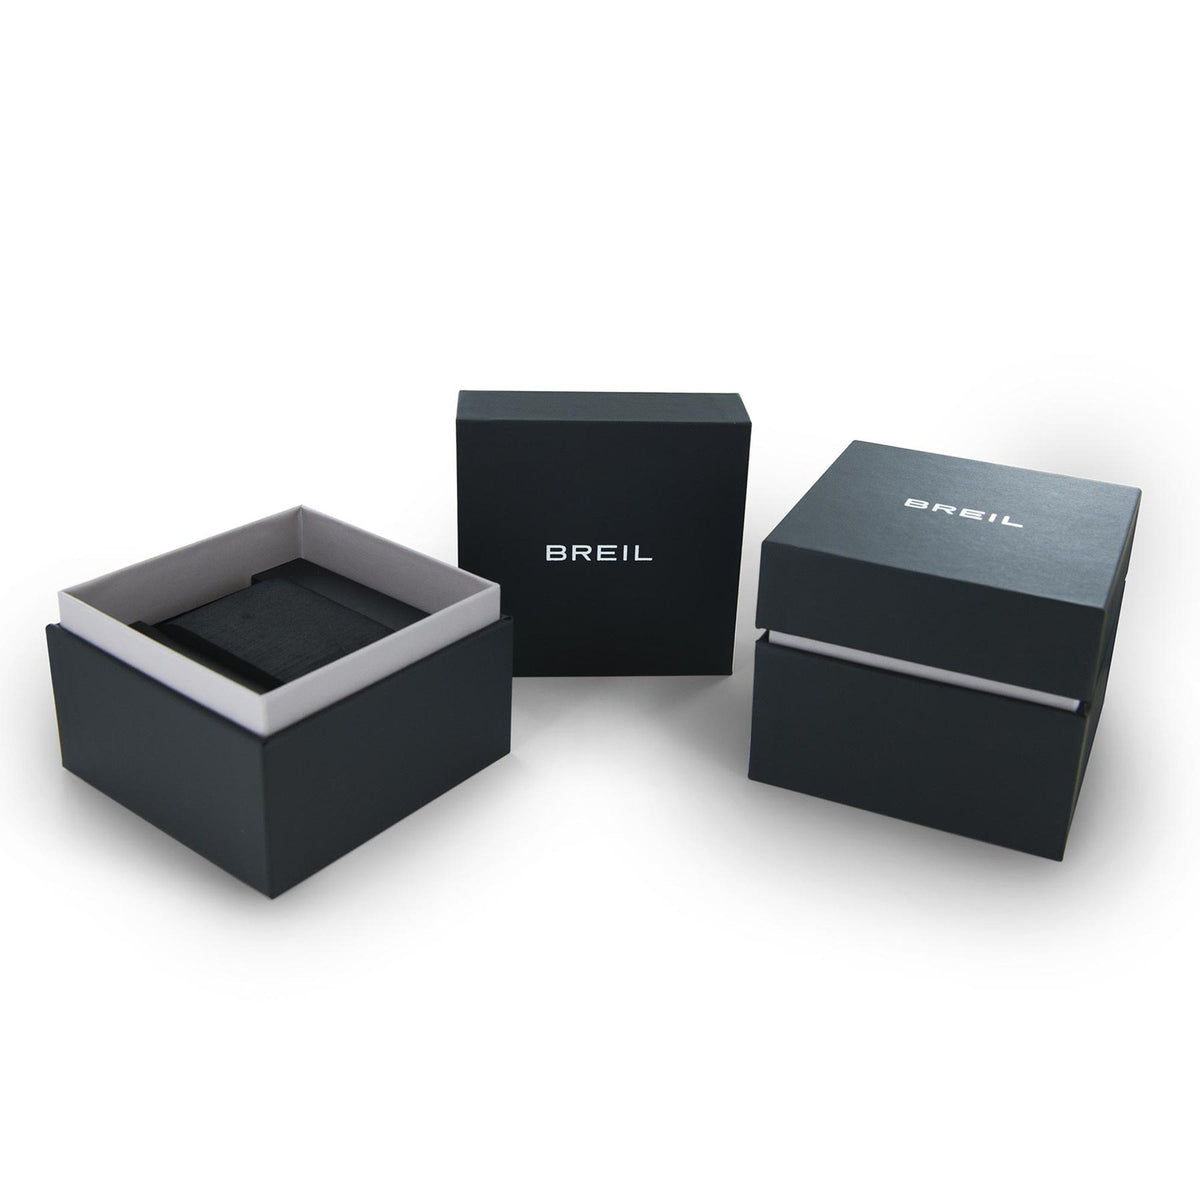 Release Breil Chrono Blu TW1898 - Spallucci Gioielli